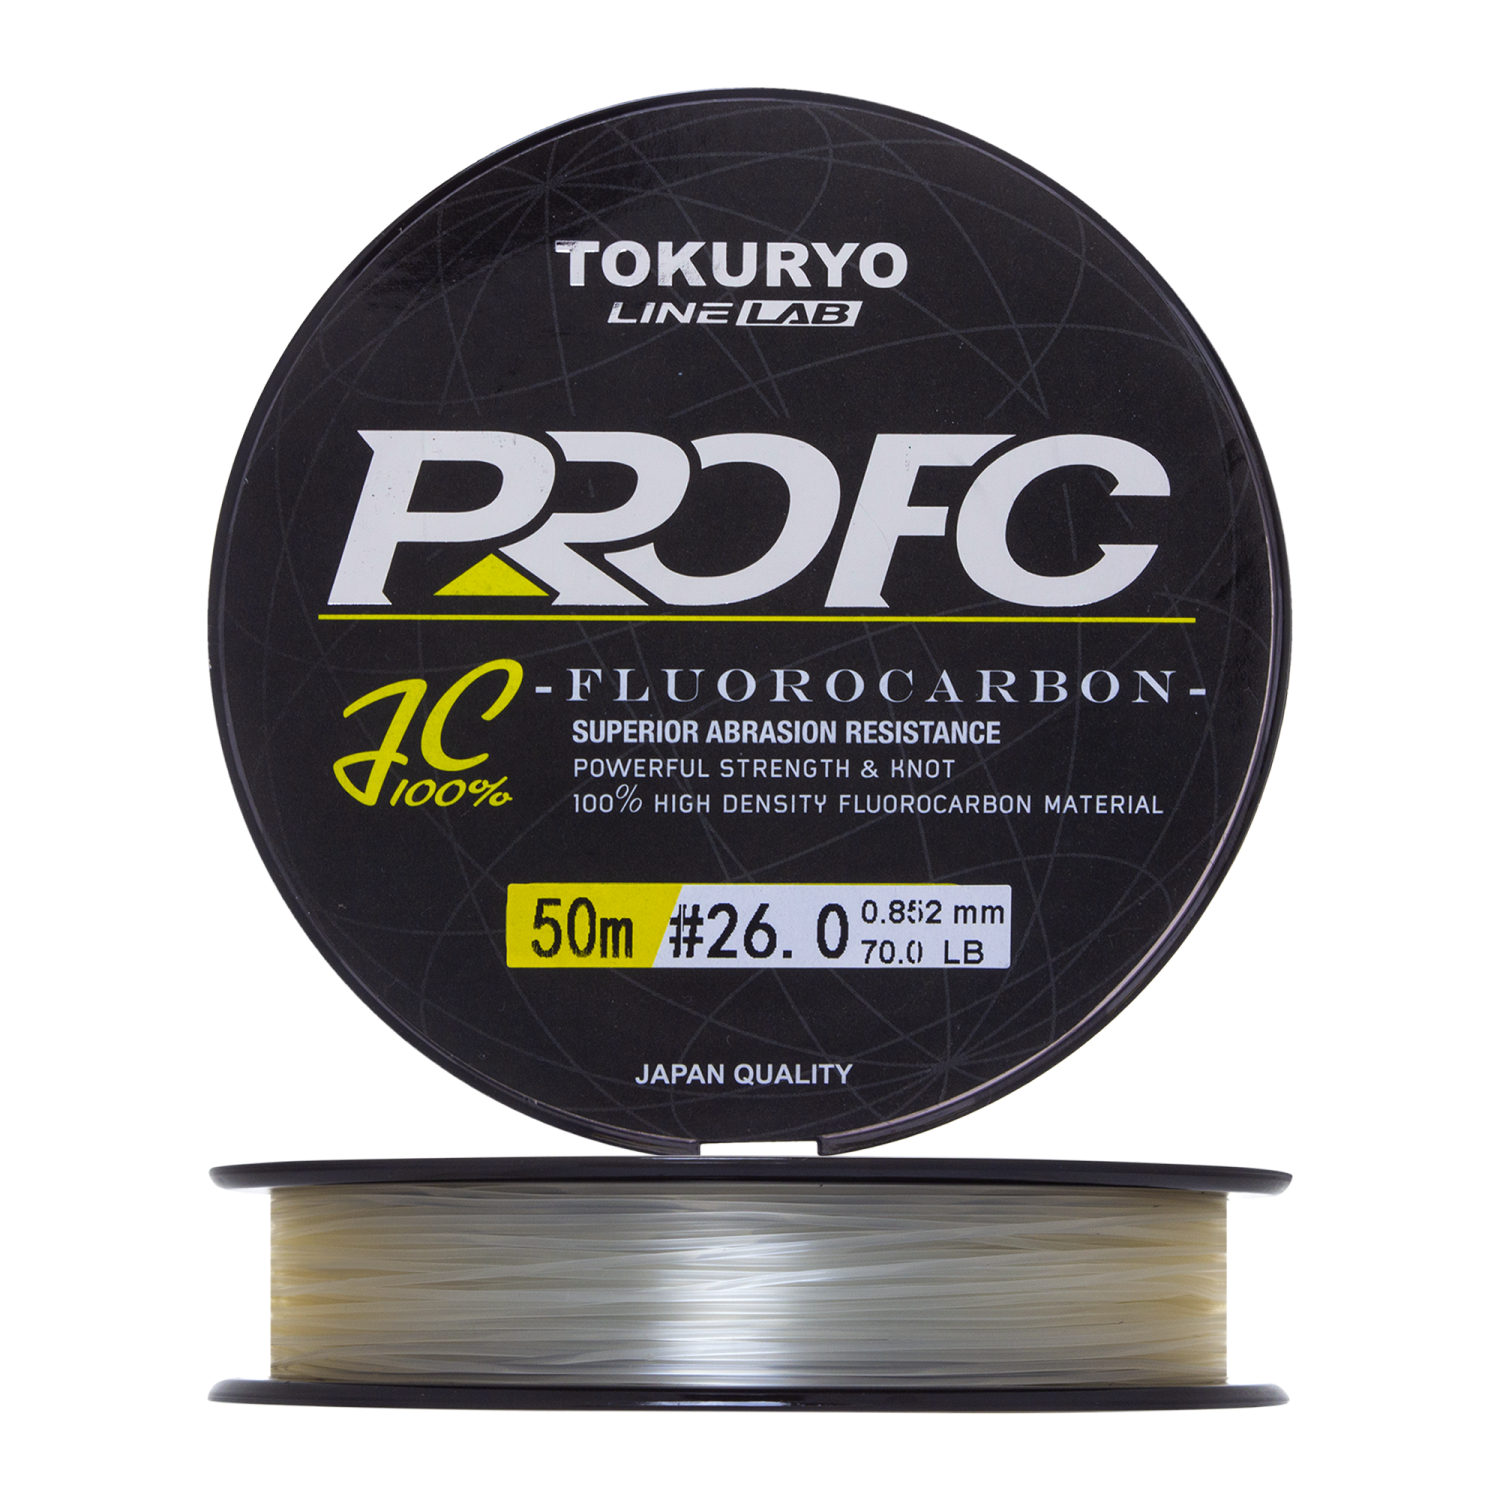 Флюорокарбон Tokuryo Fluorocarbon Pro FC #26 50м (clear)